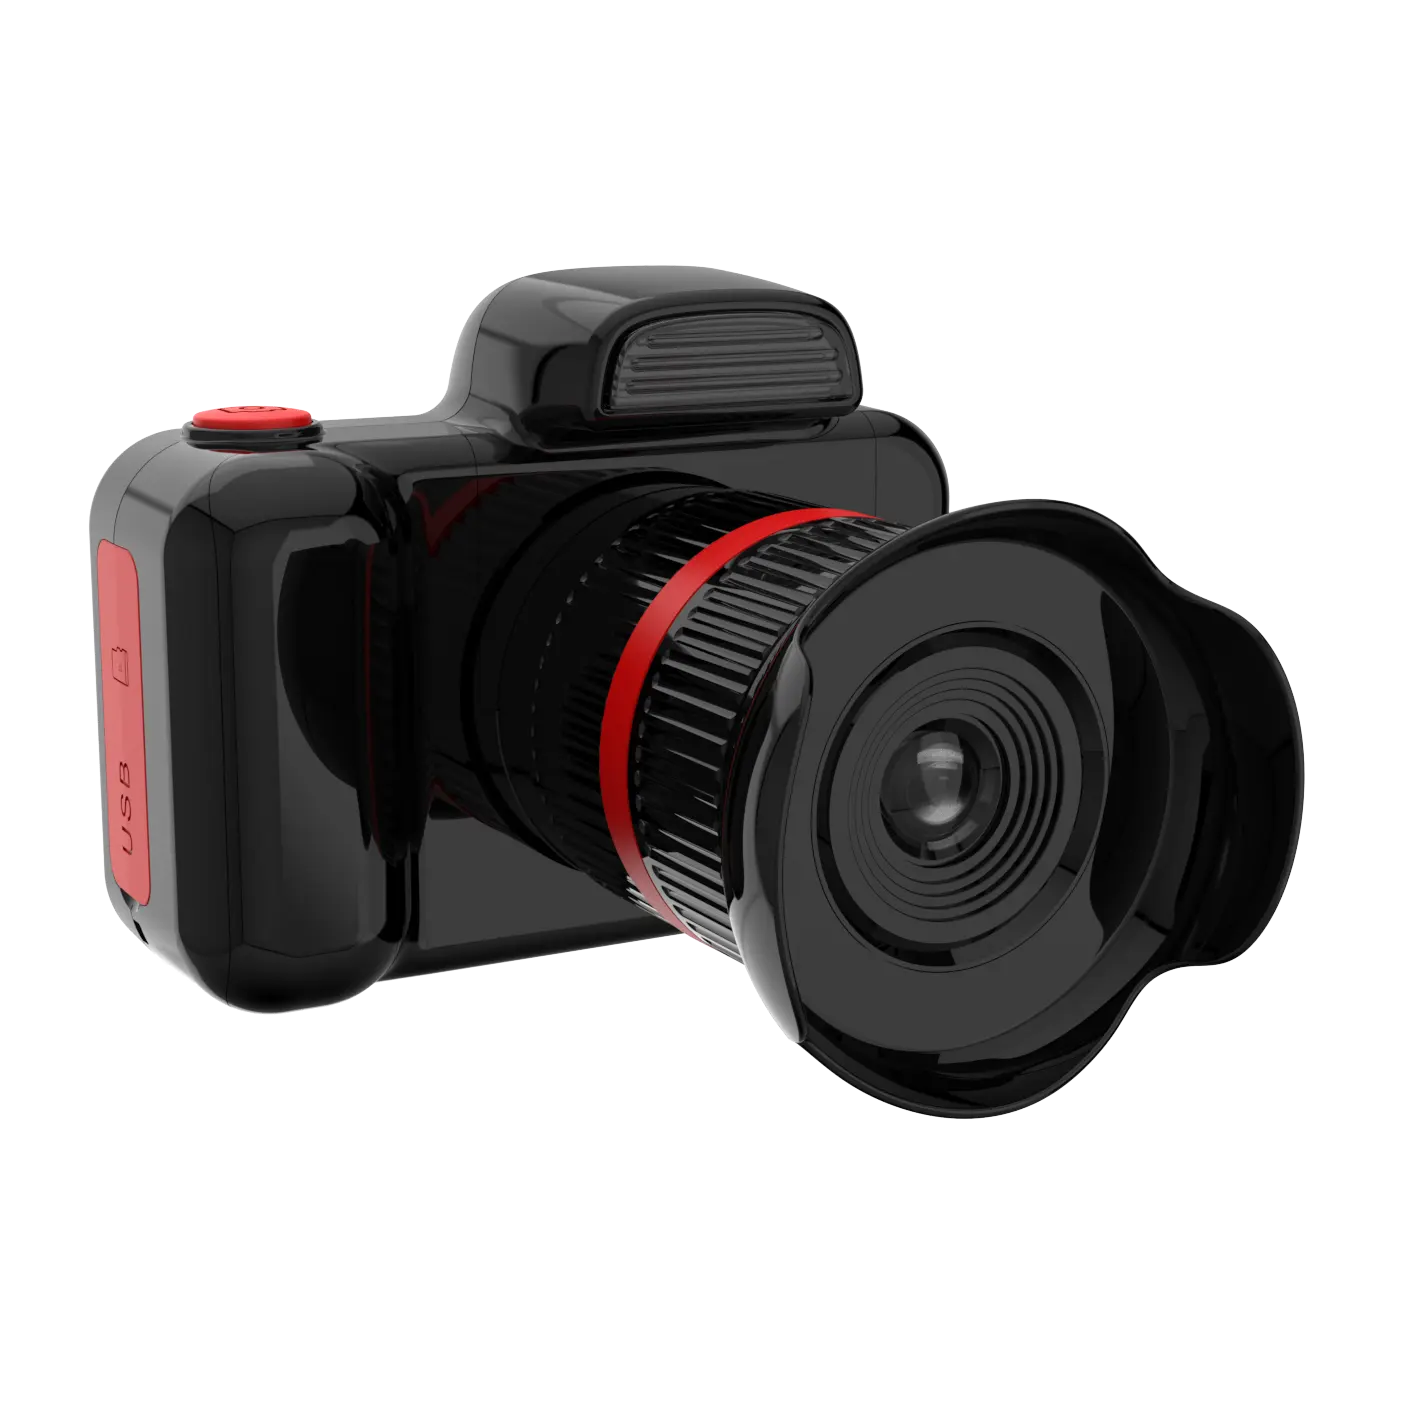 Heap-cámara digital para niños, juguete automático de brillo de 1080p con pantalla IPS de 2,0 pulgadas, grabadora de vídeo para selfis